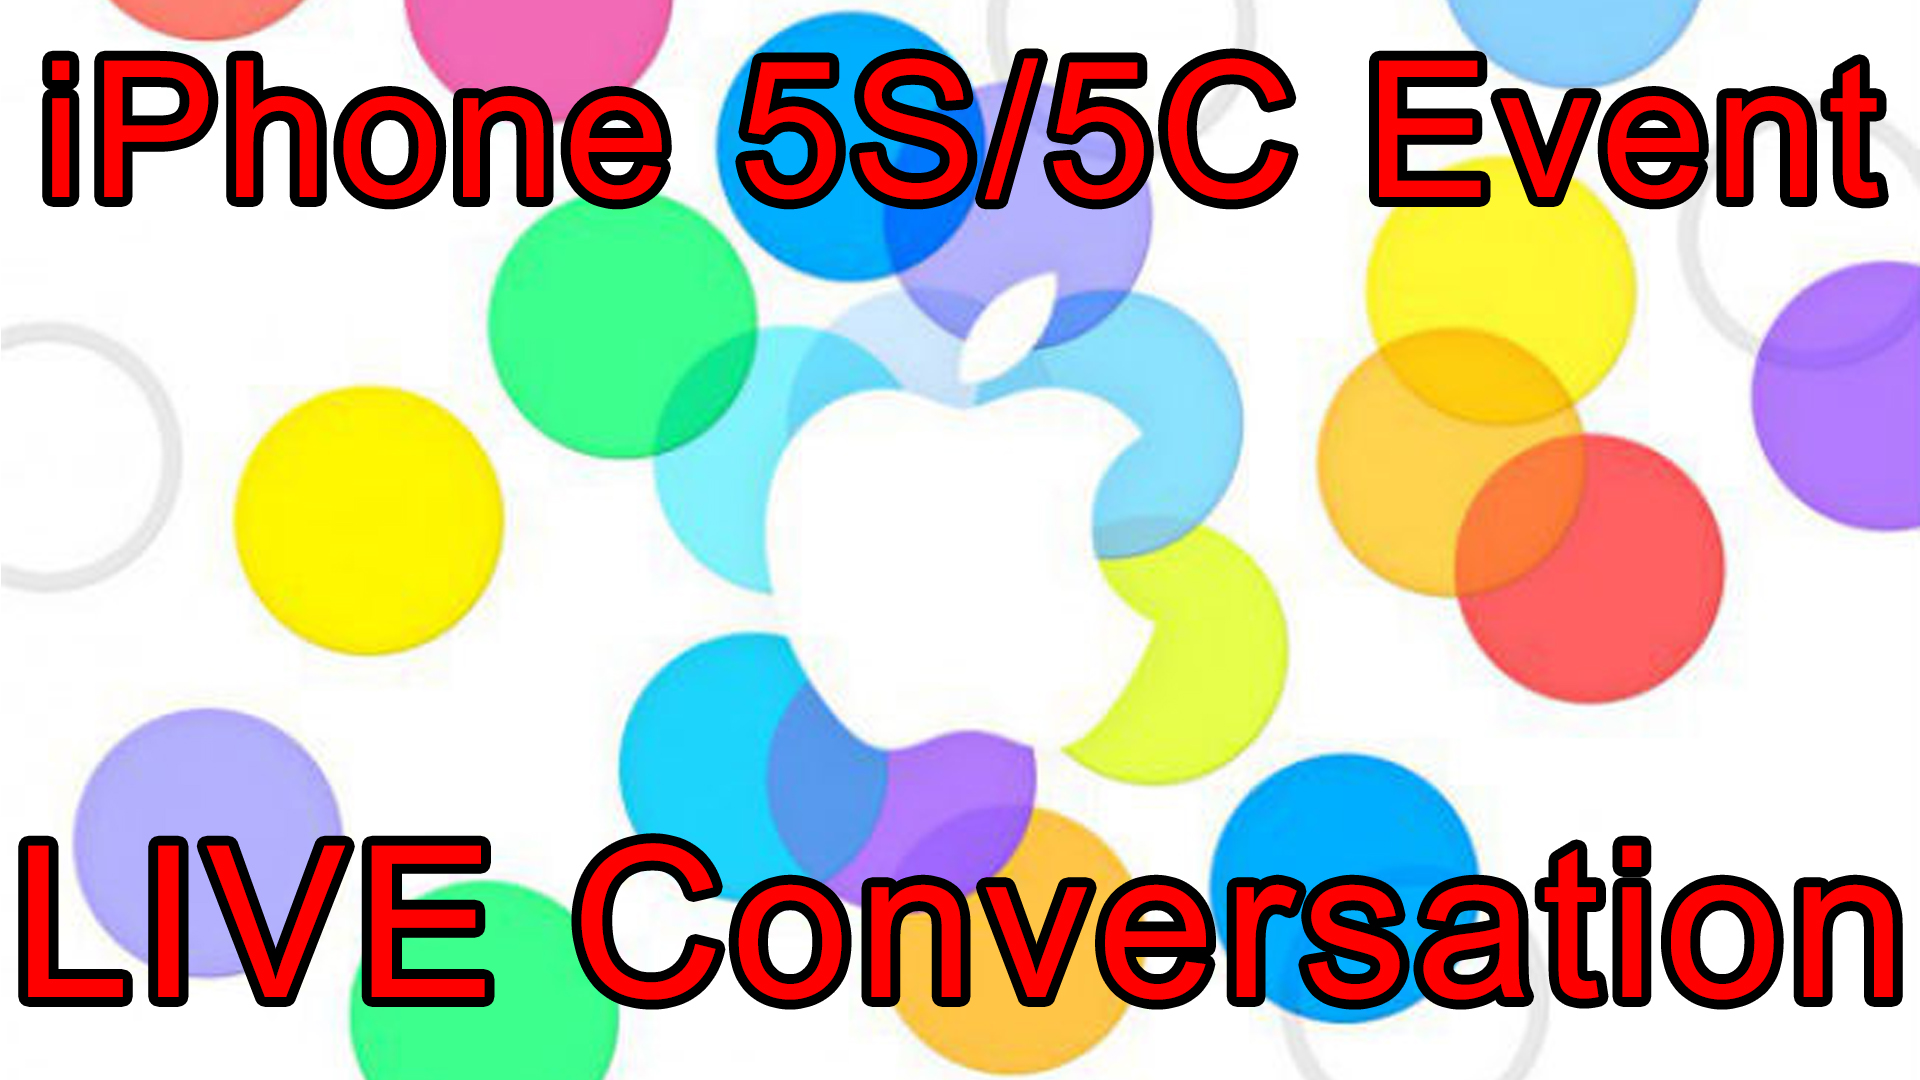 LIVE: Apple iPhone 5S / iPhone 5C / iOS 7 Media Event